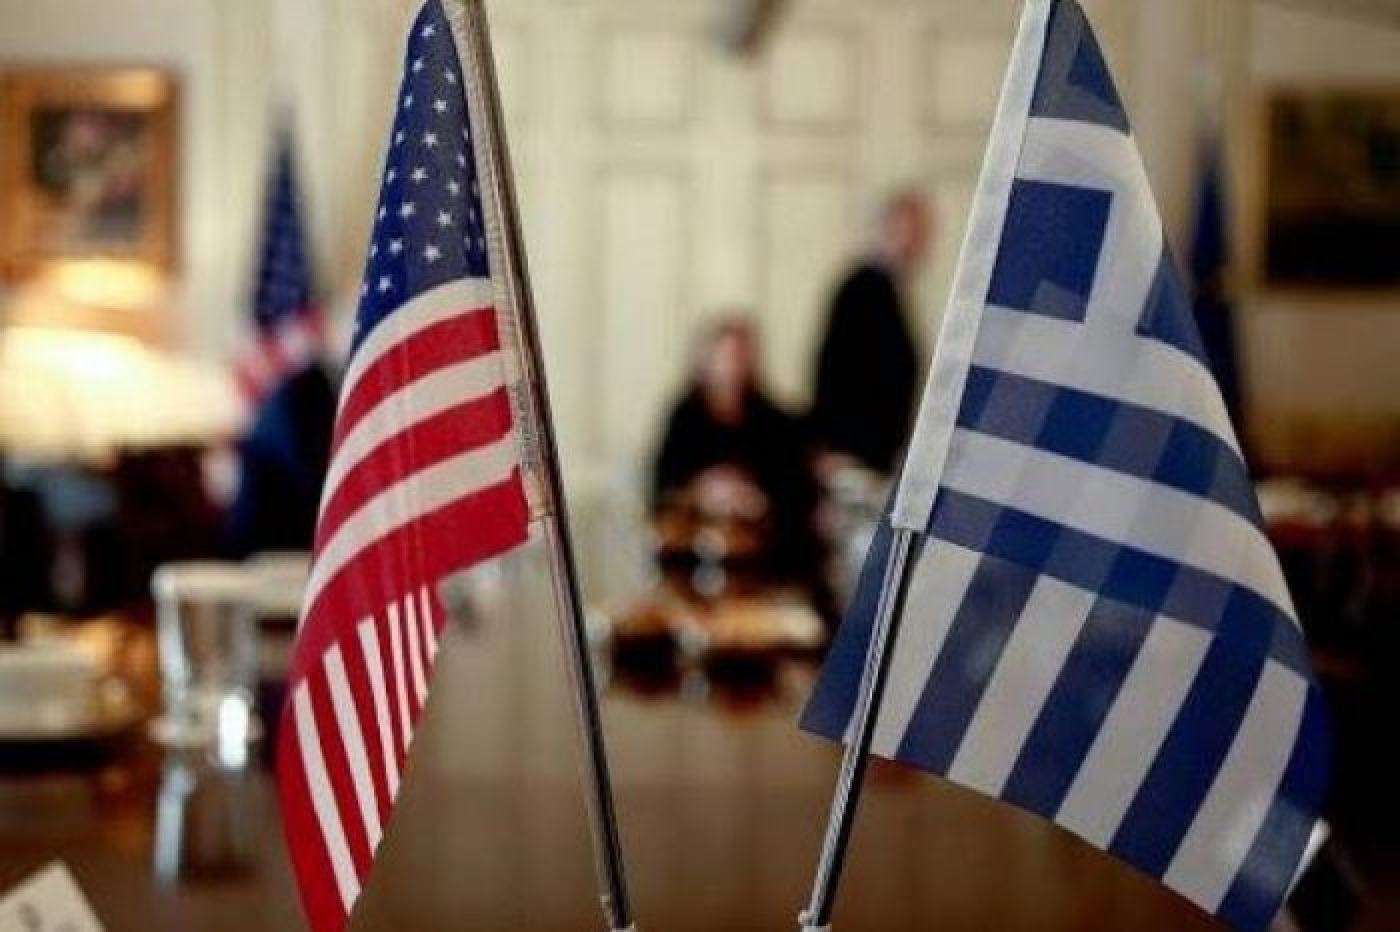 ABD jeopolitik fiyaskodan desteğini çekti: Atina'da hayal kırıklığı mevcut